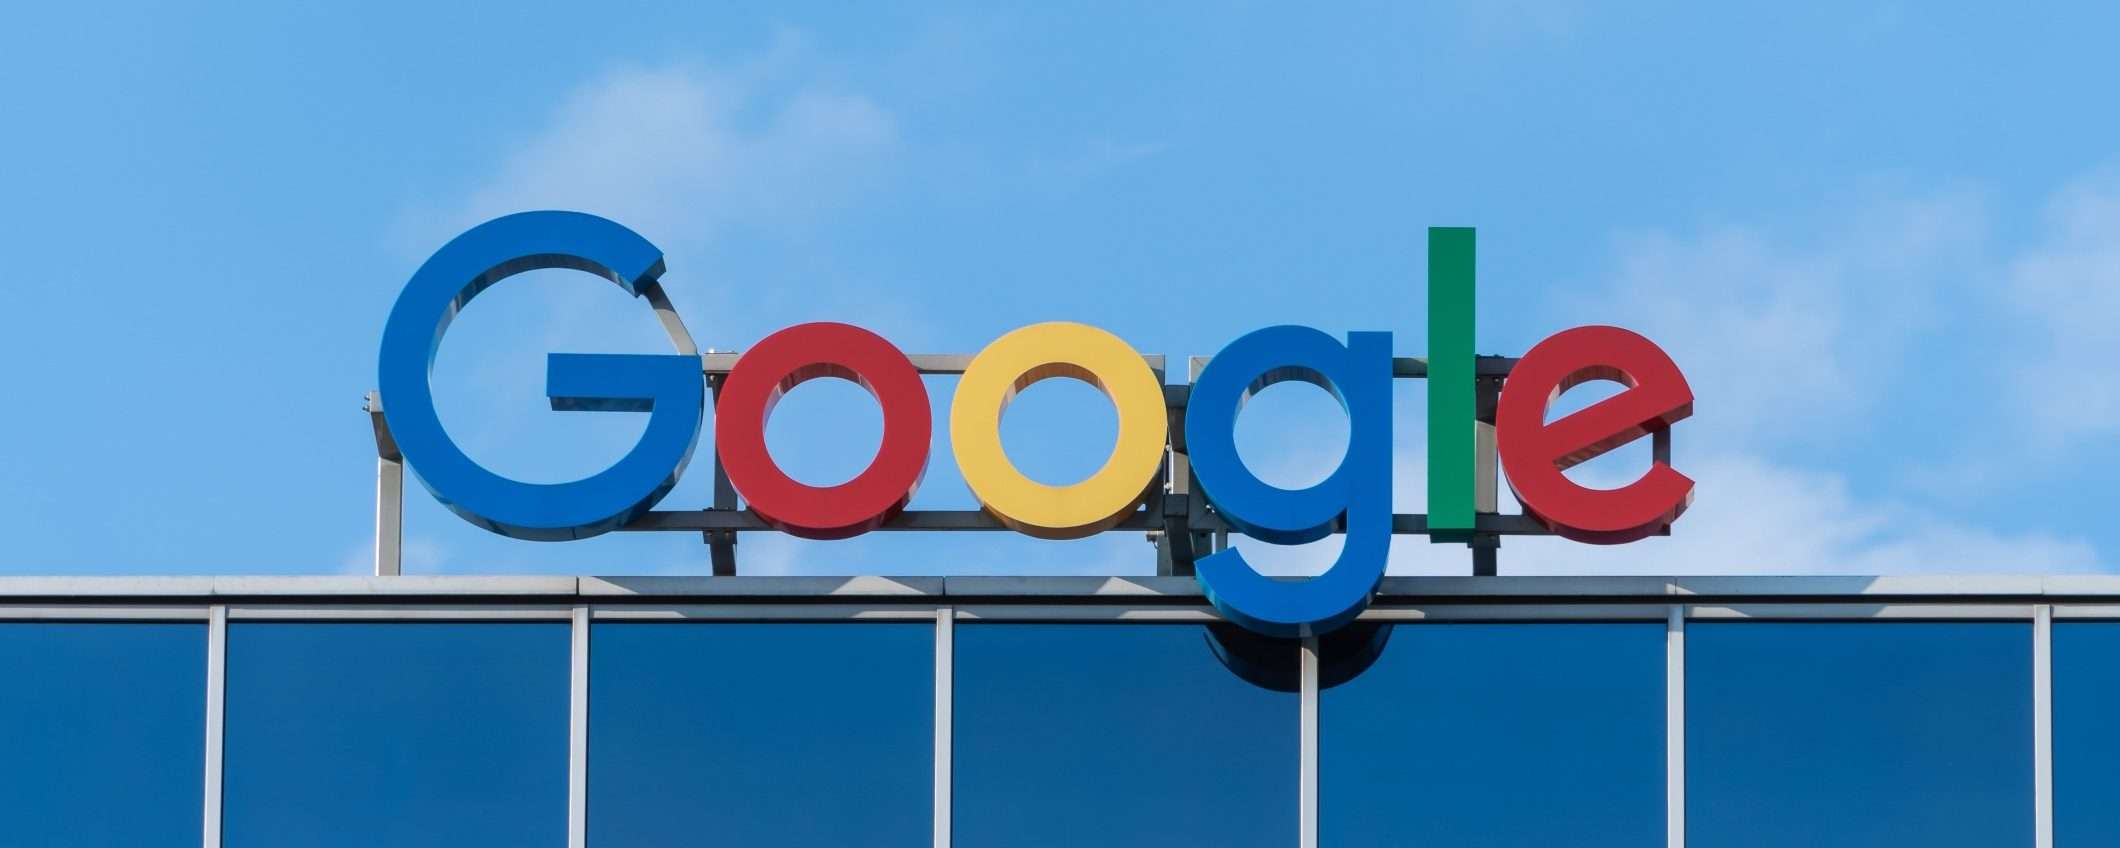 Google multata in Corea del Sud per 32 milioni di dollari